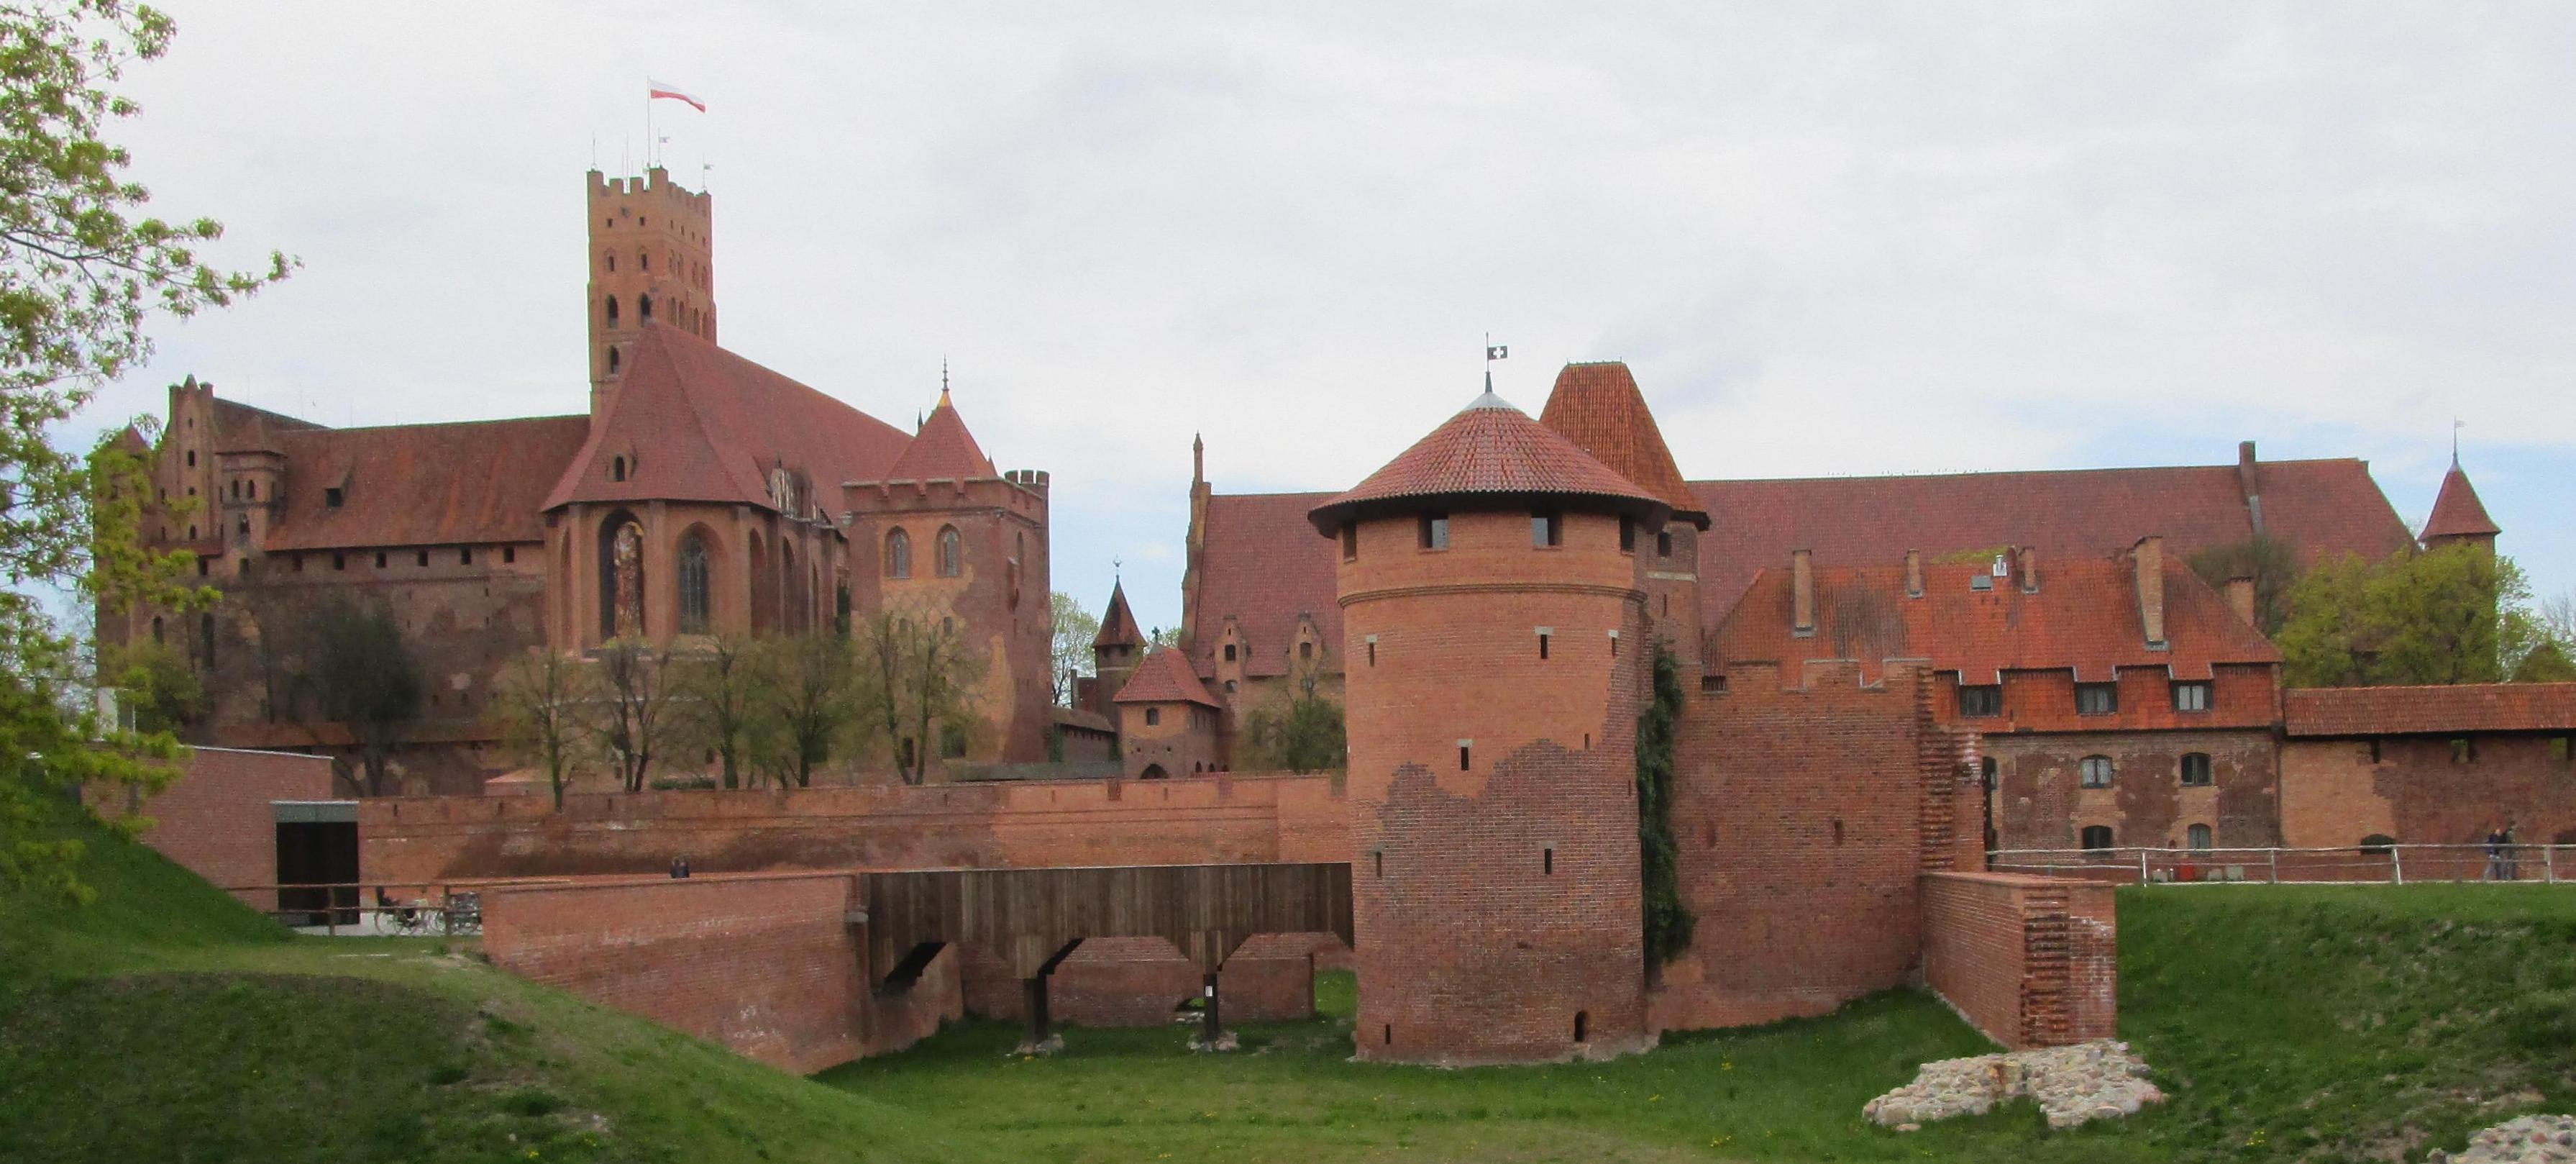 Spuren der Reformation – auch in Polen?